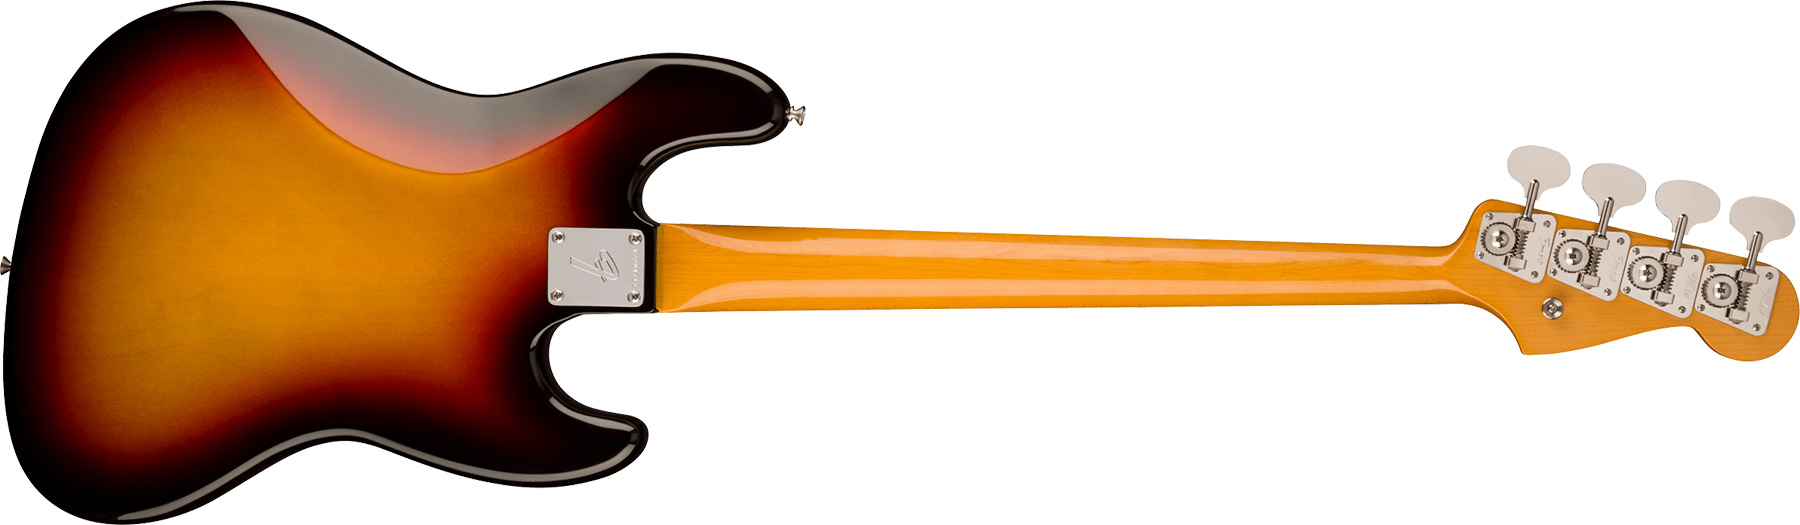 Fender Jazz Bass 1966 American Vintage Ii Lh Gaucher Usa Rw - 3-color Sunburst - Bajo eléctrico de cuerpo sólido - Variation 1